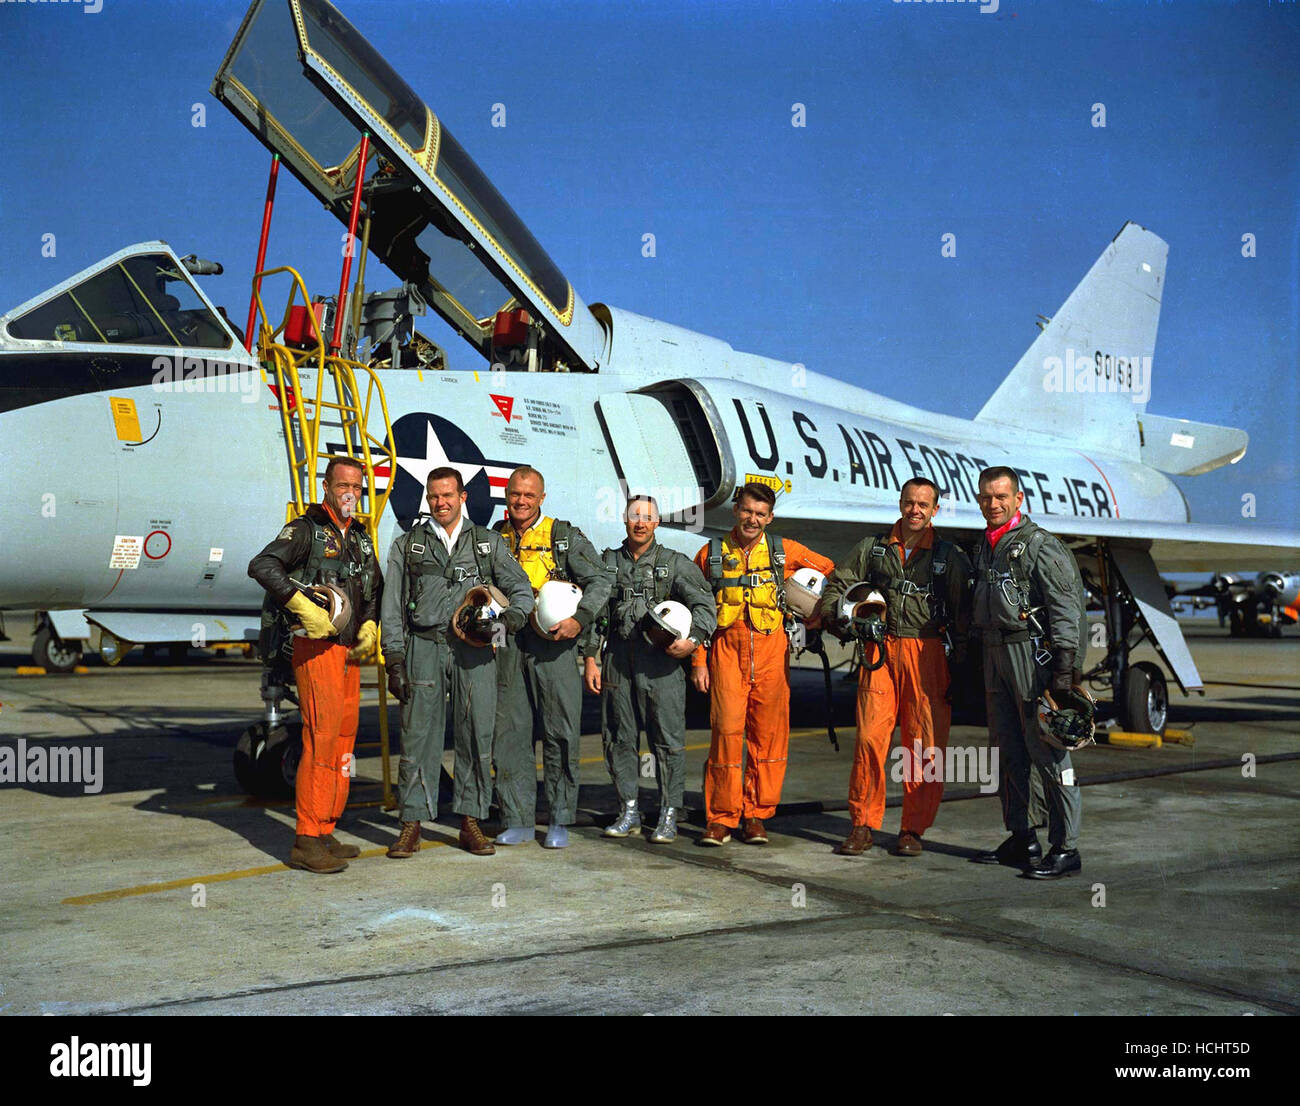 Foto von der Mercury-Astronauten stehen neben einer Convair 106 B Flugzeug, aufgenommen am 20. Januar 1961. Sie sind von links nach rechts, M. Scott Carpenter, L. Gordon Cooper Jr., John H. Glenn Jr., Virgil I. Grissom, Walter M. Schirra Jr., Alan B. Shepard Jr. und Donald K. Slayton. Credit: NASA mittels CNP - kein Draht-SERVICE - Foto: Nasa/konsolidiert News Fotos/NASA über CNP Stockfoto